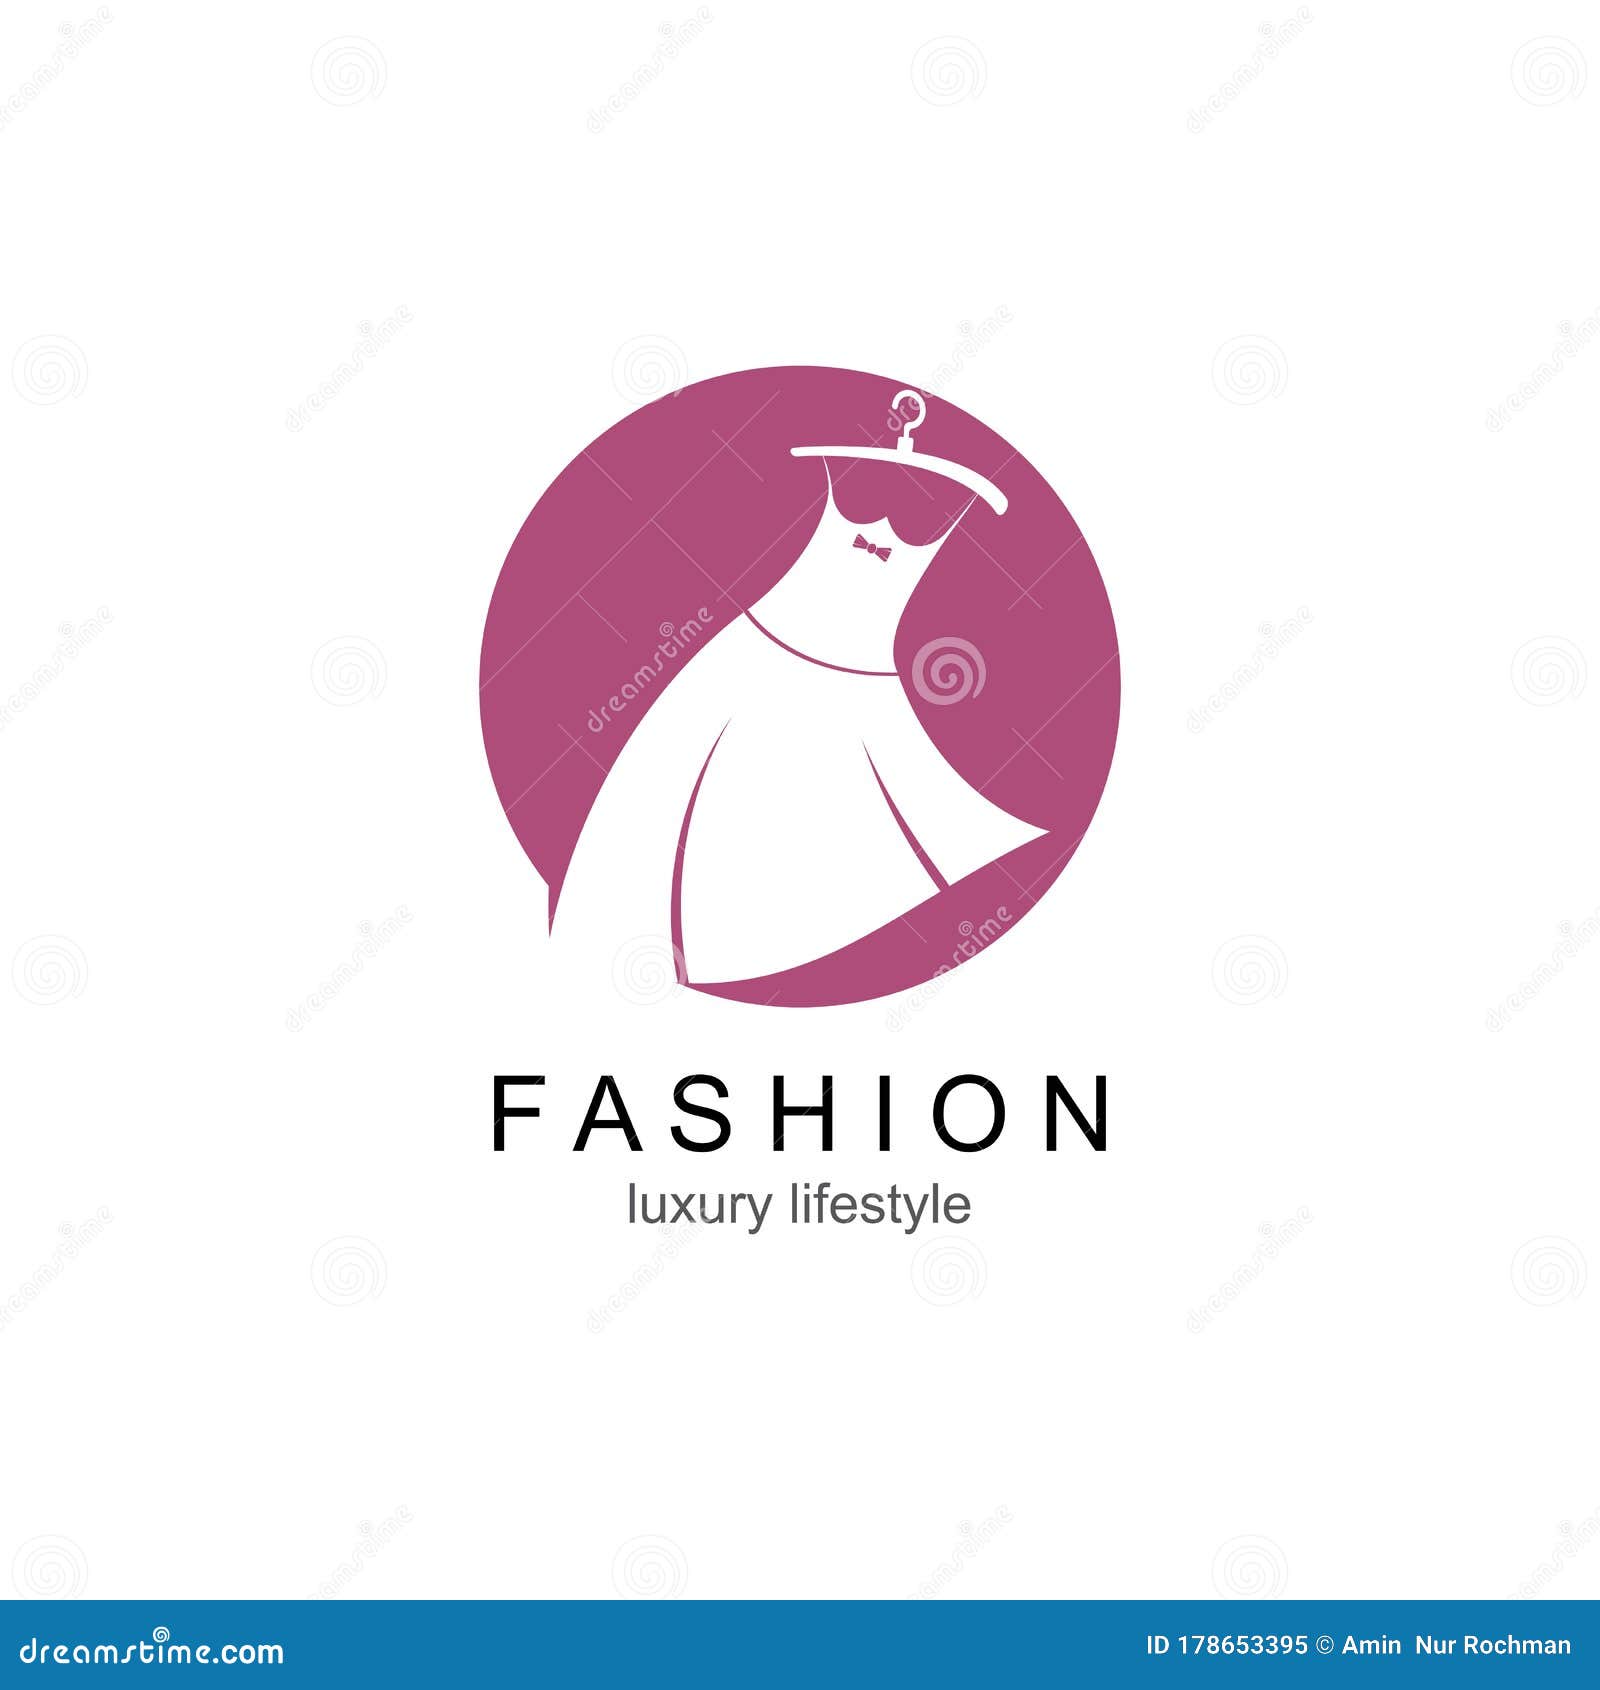 Логотипы Магазинов Одежды Фото